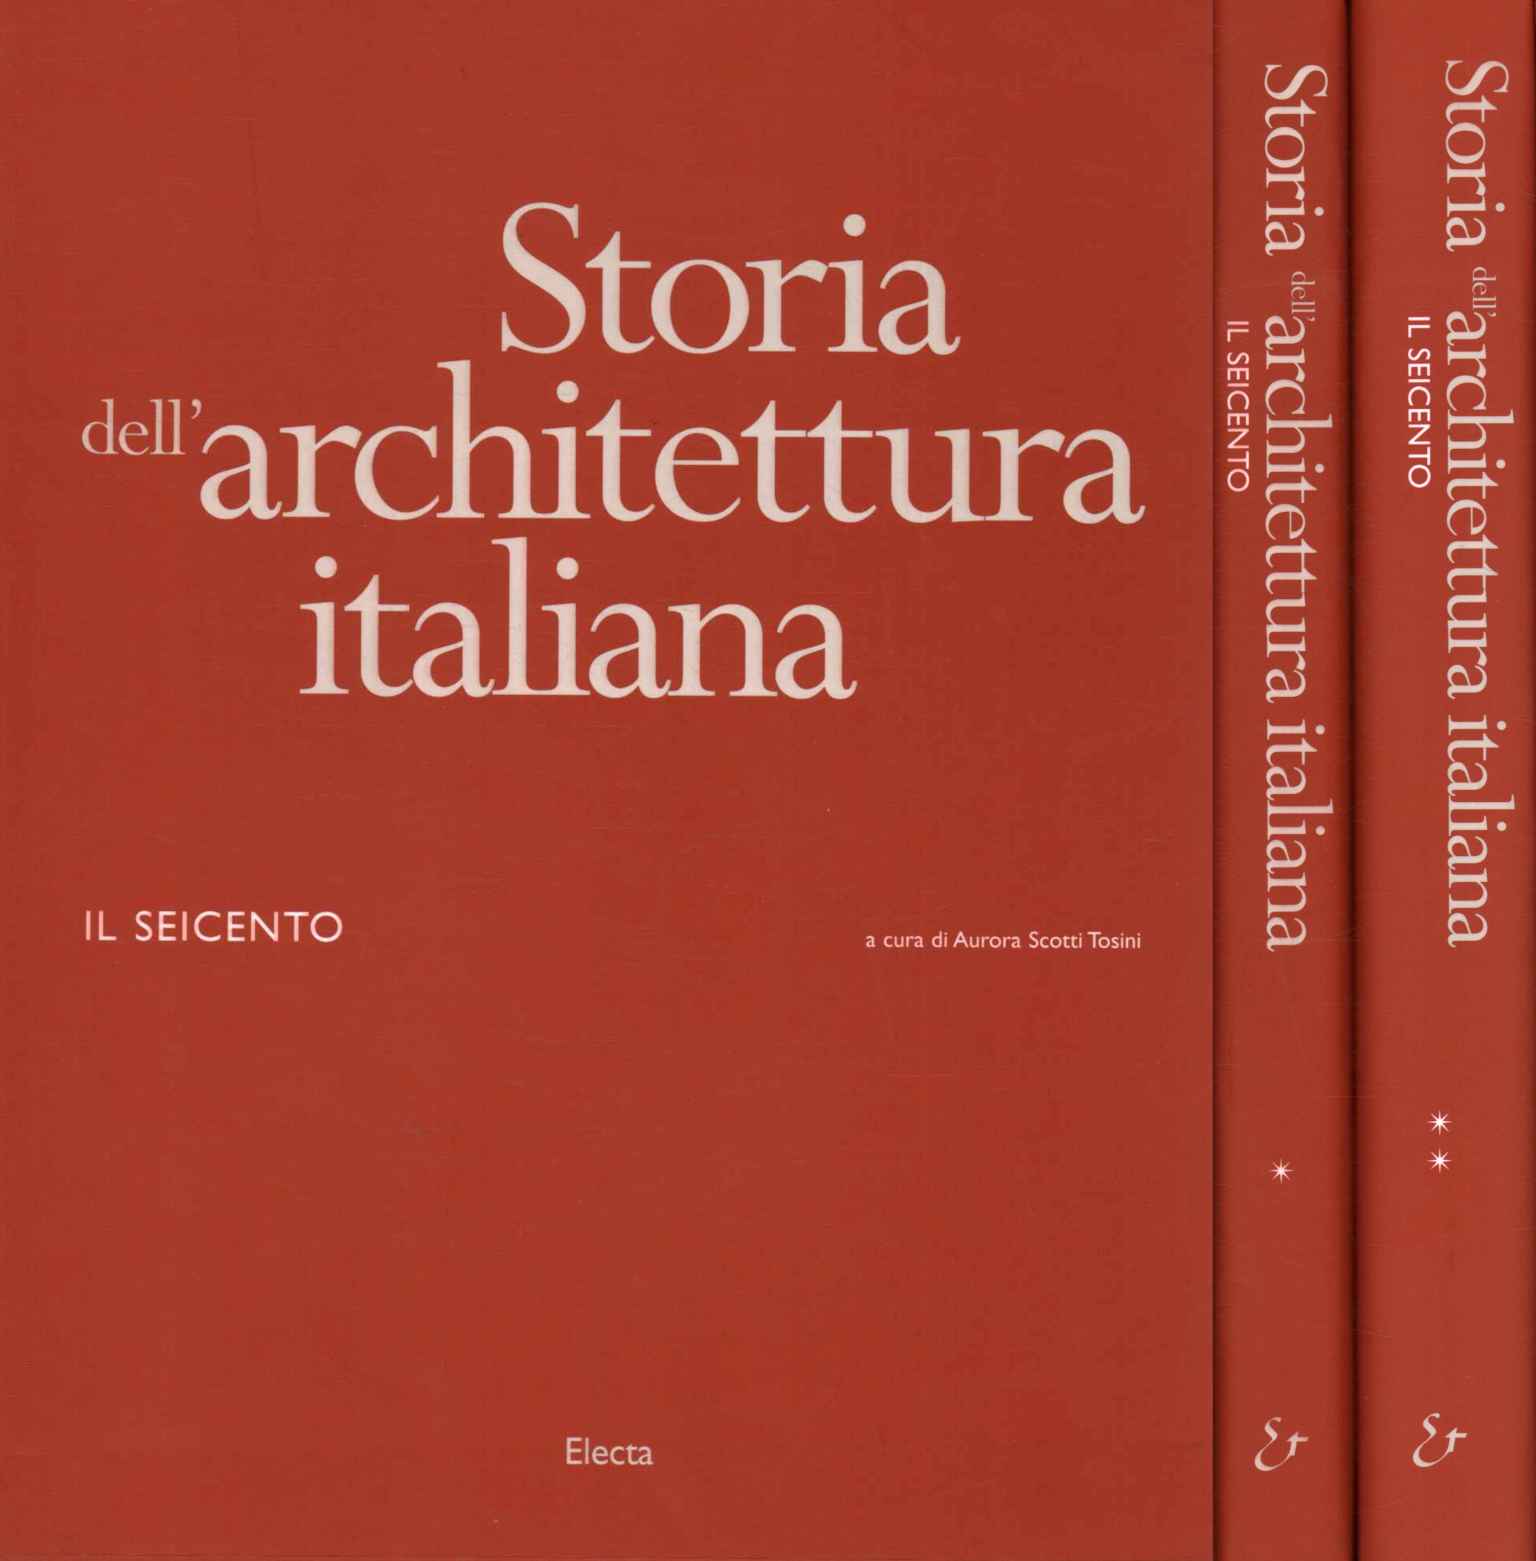 Storia dell'architettura italiana.%,Storia dell'architettura italiana.%,Storia dell'architettura italiana.%